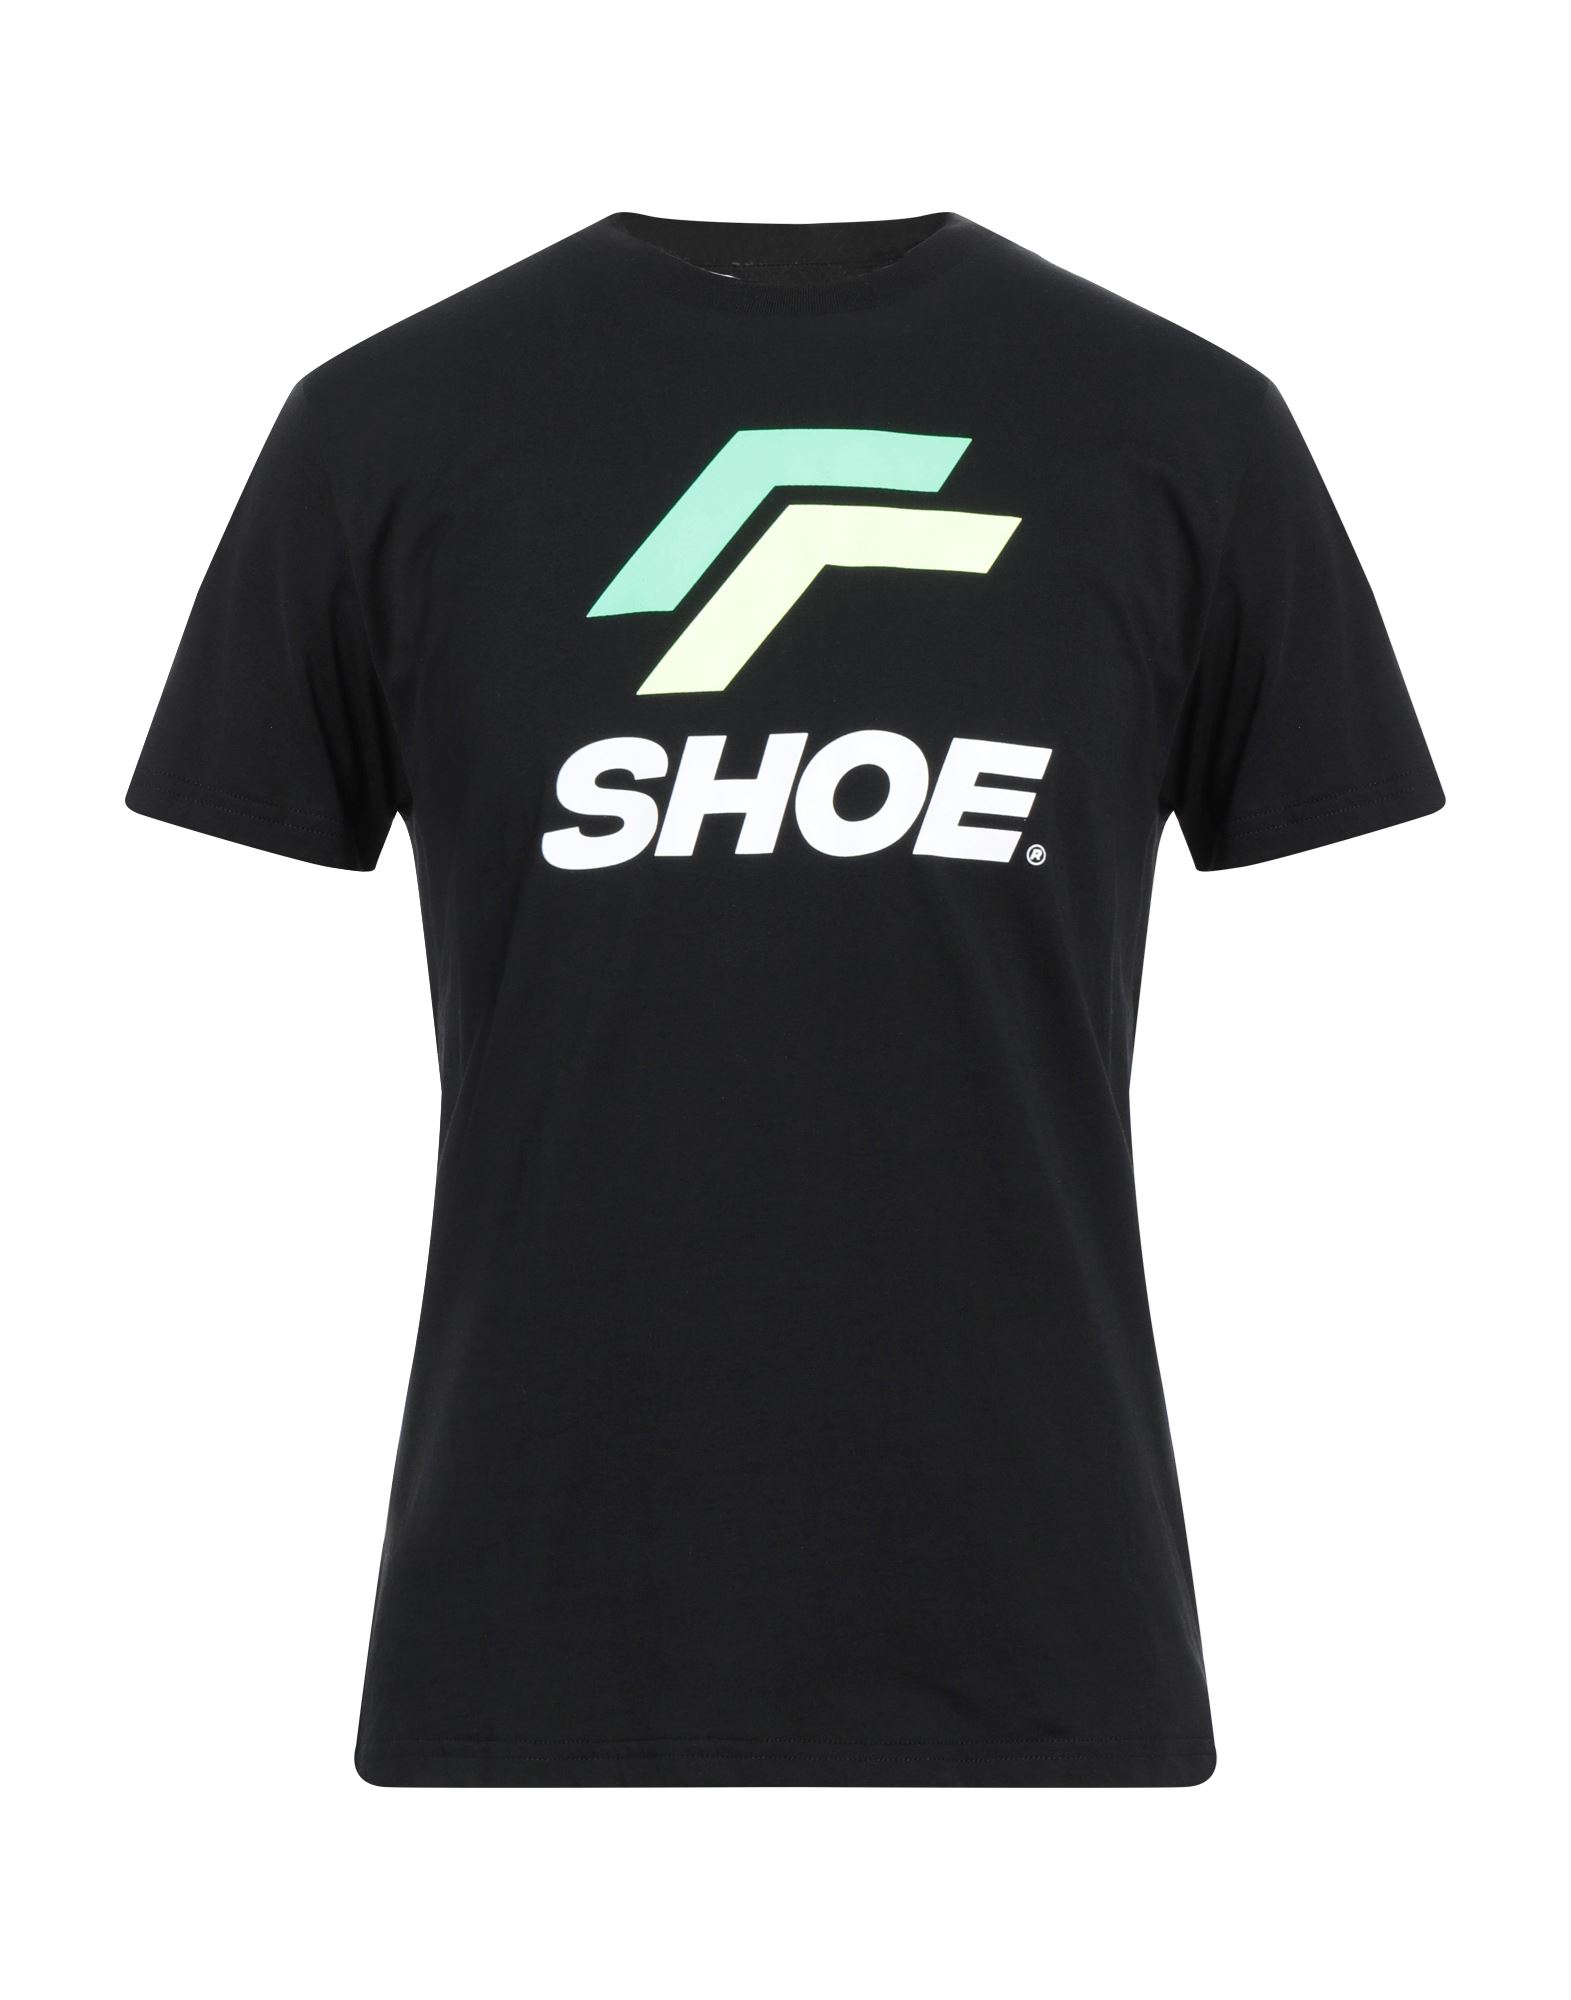 Shoe® Shoe Man T-shirt Black Size S Cotton